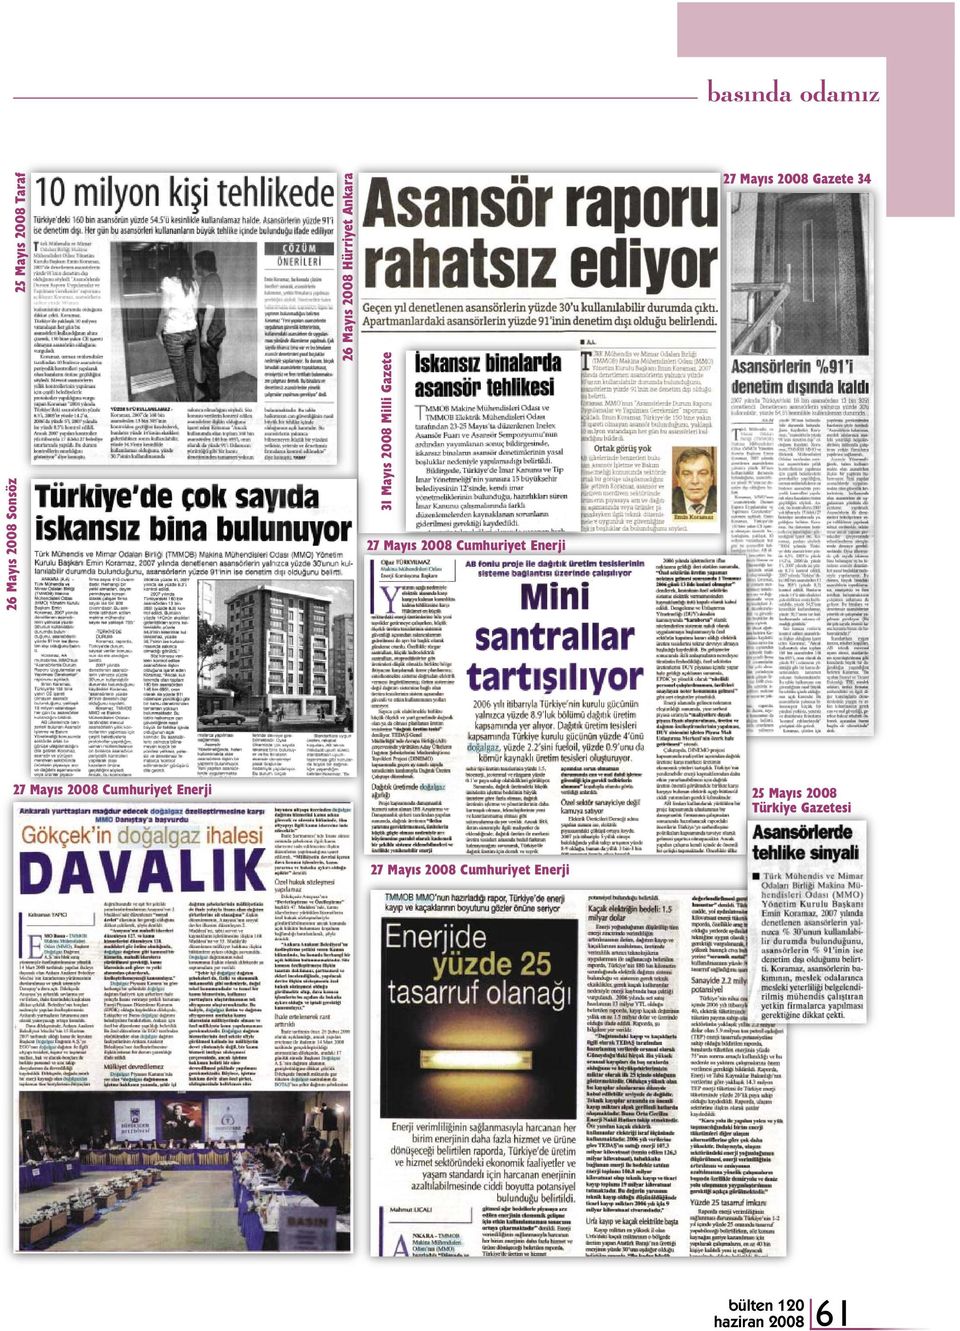 Cumhuriyet Enerji 27 Mayıs 2008 Gazete 34 27 Mayıs 2008